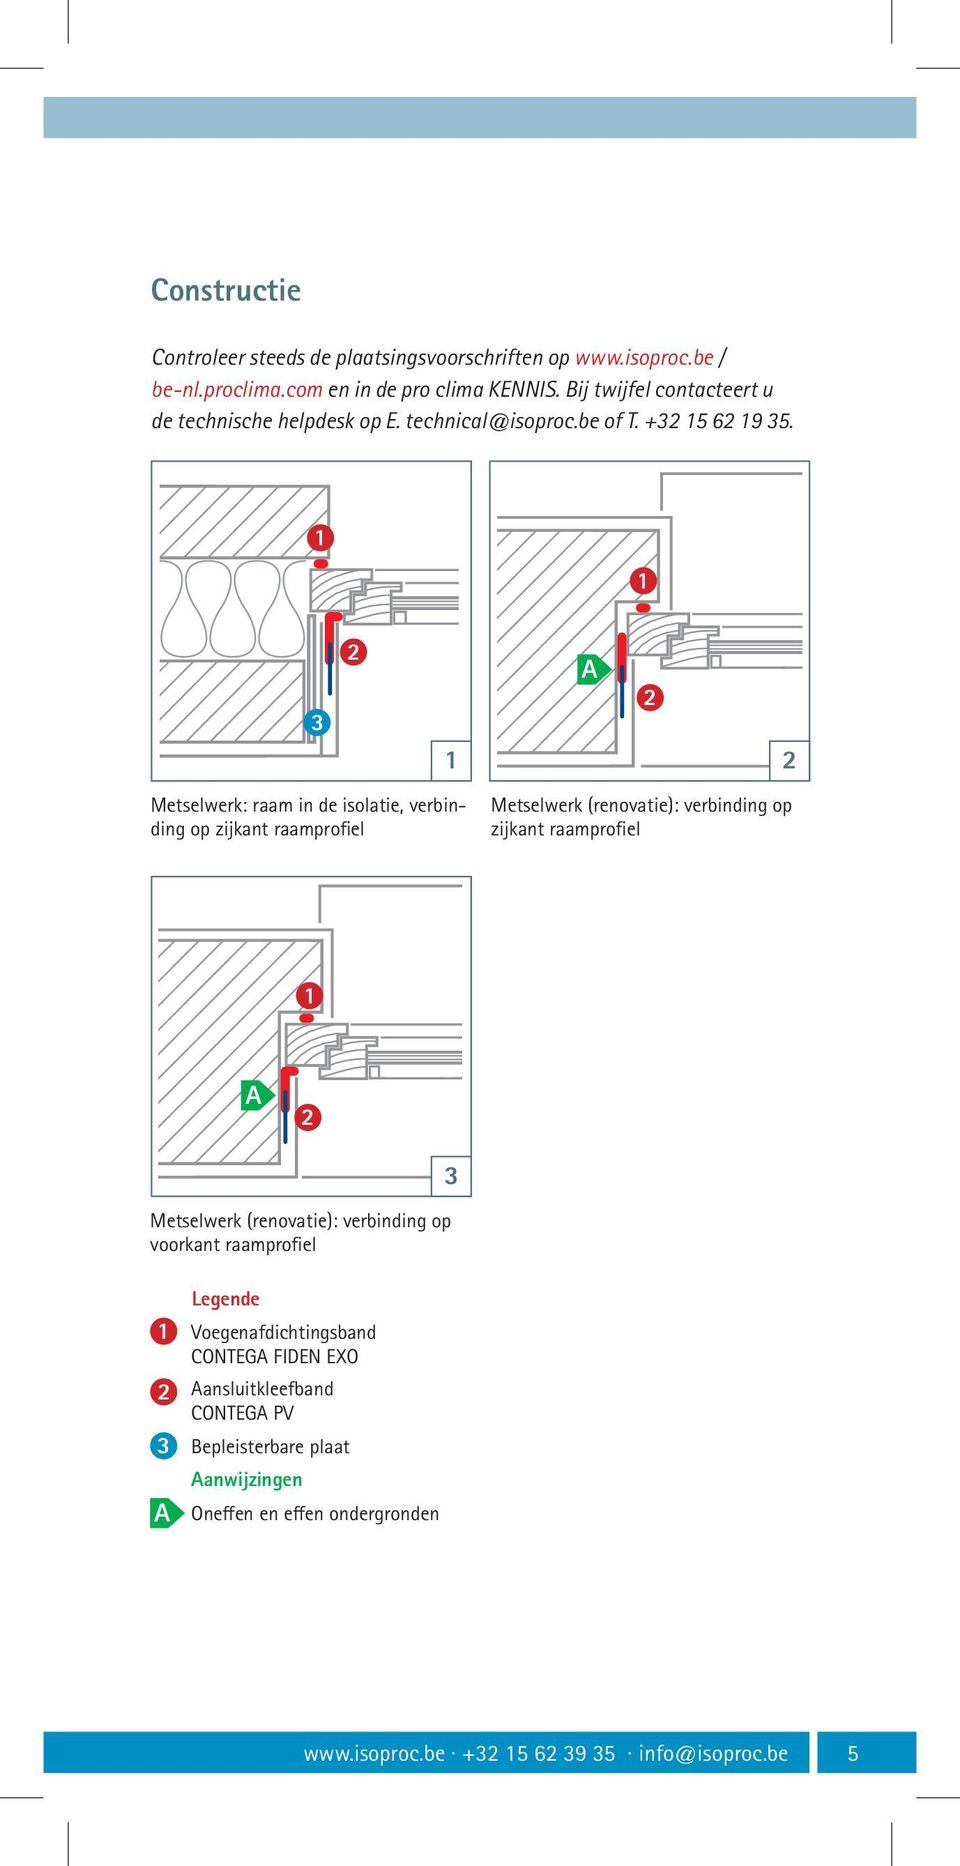 A Metselwerk: raam in de isolatie, verbinding op zijkant raamprofiel Metselwerk (renovatie): verbinding op zijkant raamprofiel A Metselwerk